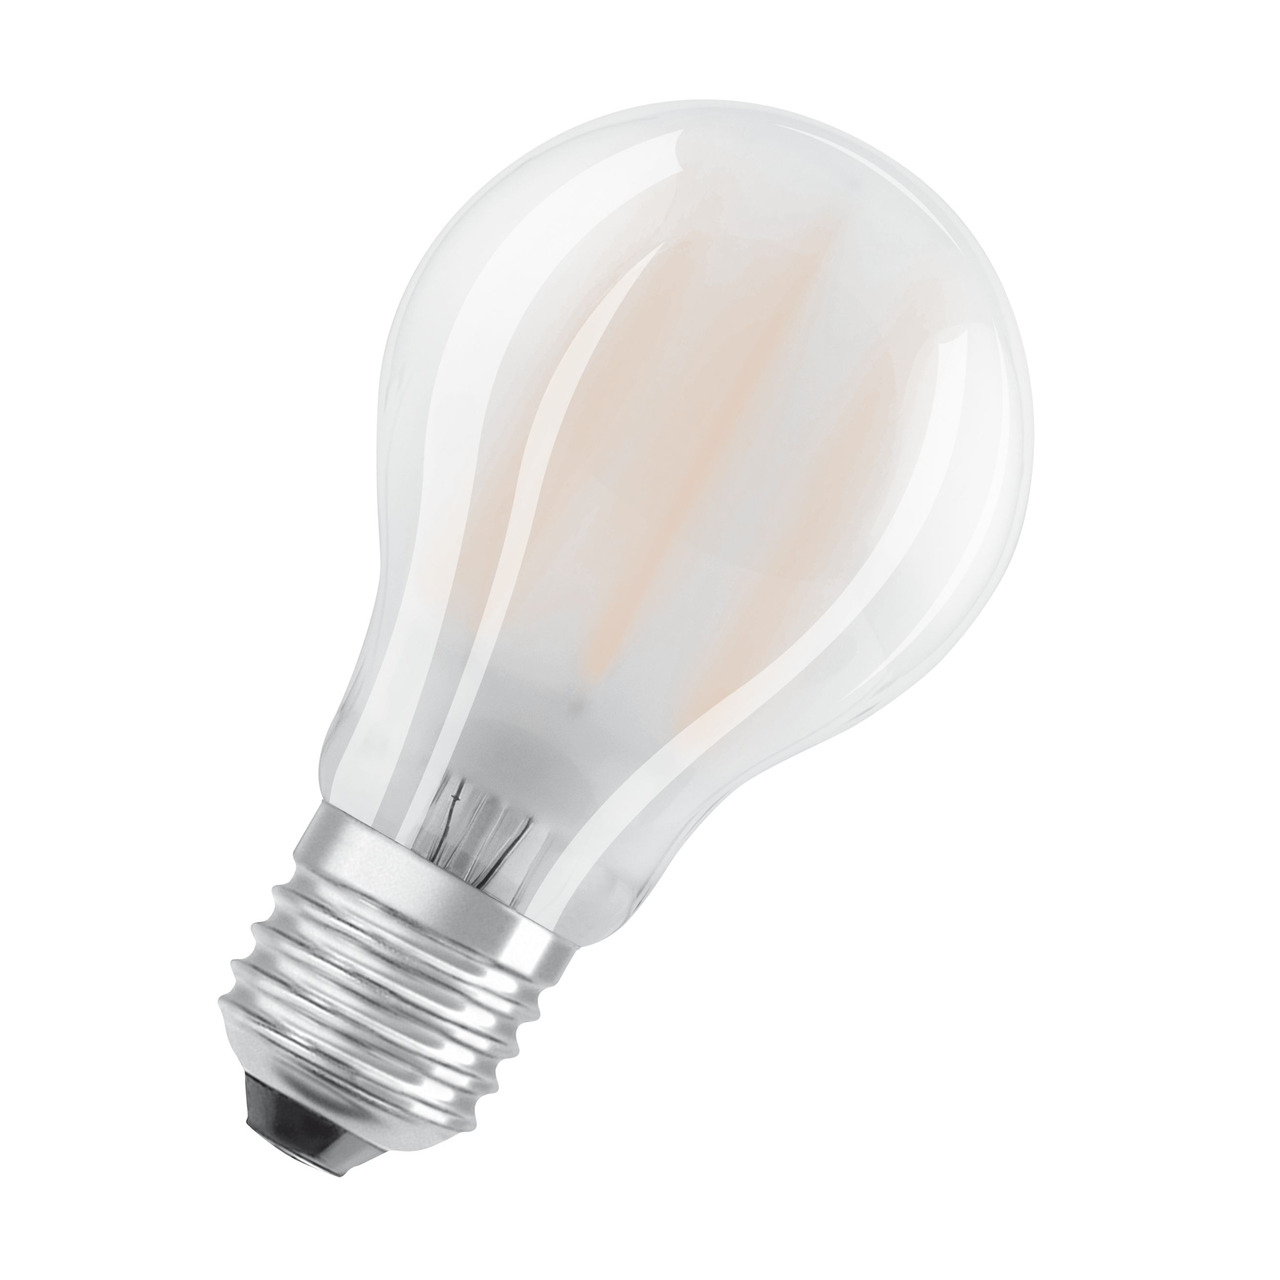 OSRAM 11-W-LED-Lampe A60- E27- 1521 lm- kaltweiss- matt